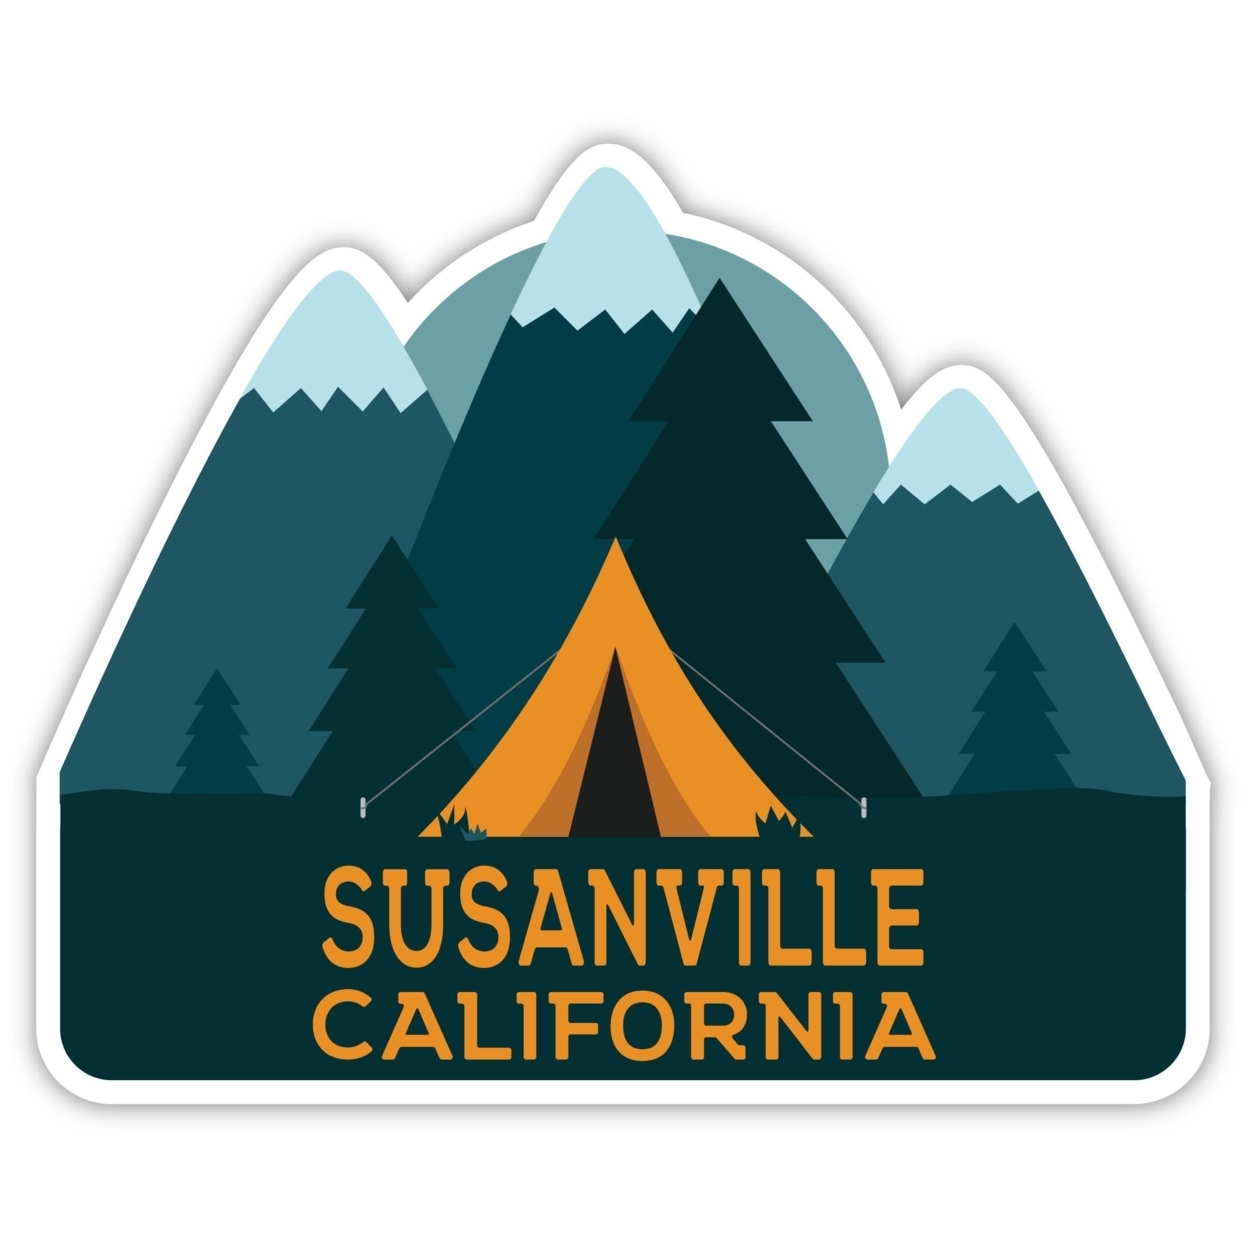 Susanville California Souvenir Decorative Stickers (Choose Theme And Size) - Single Unit, 4-Inch, Tent